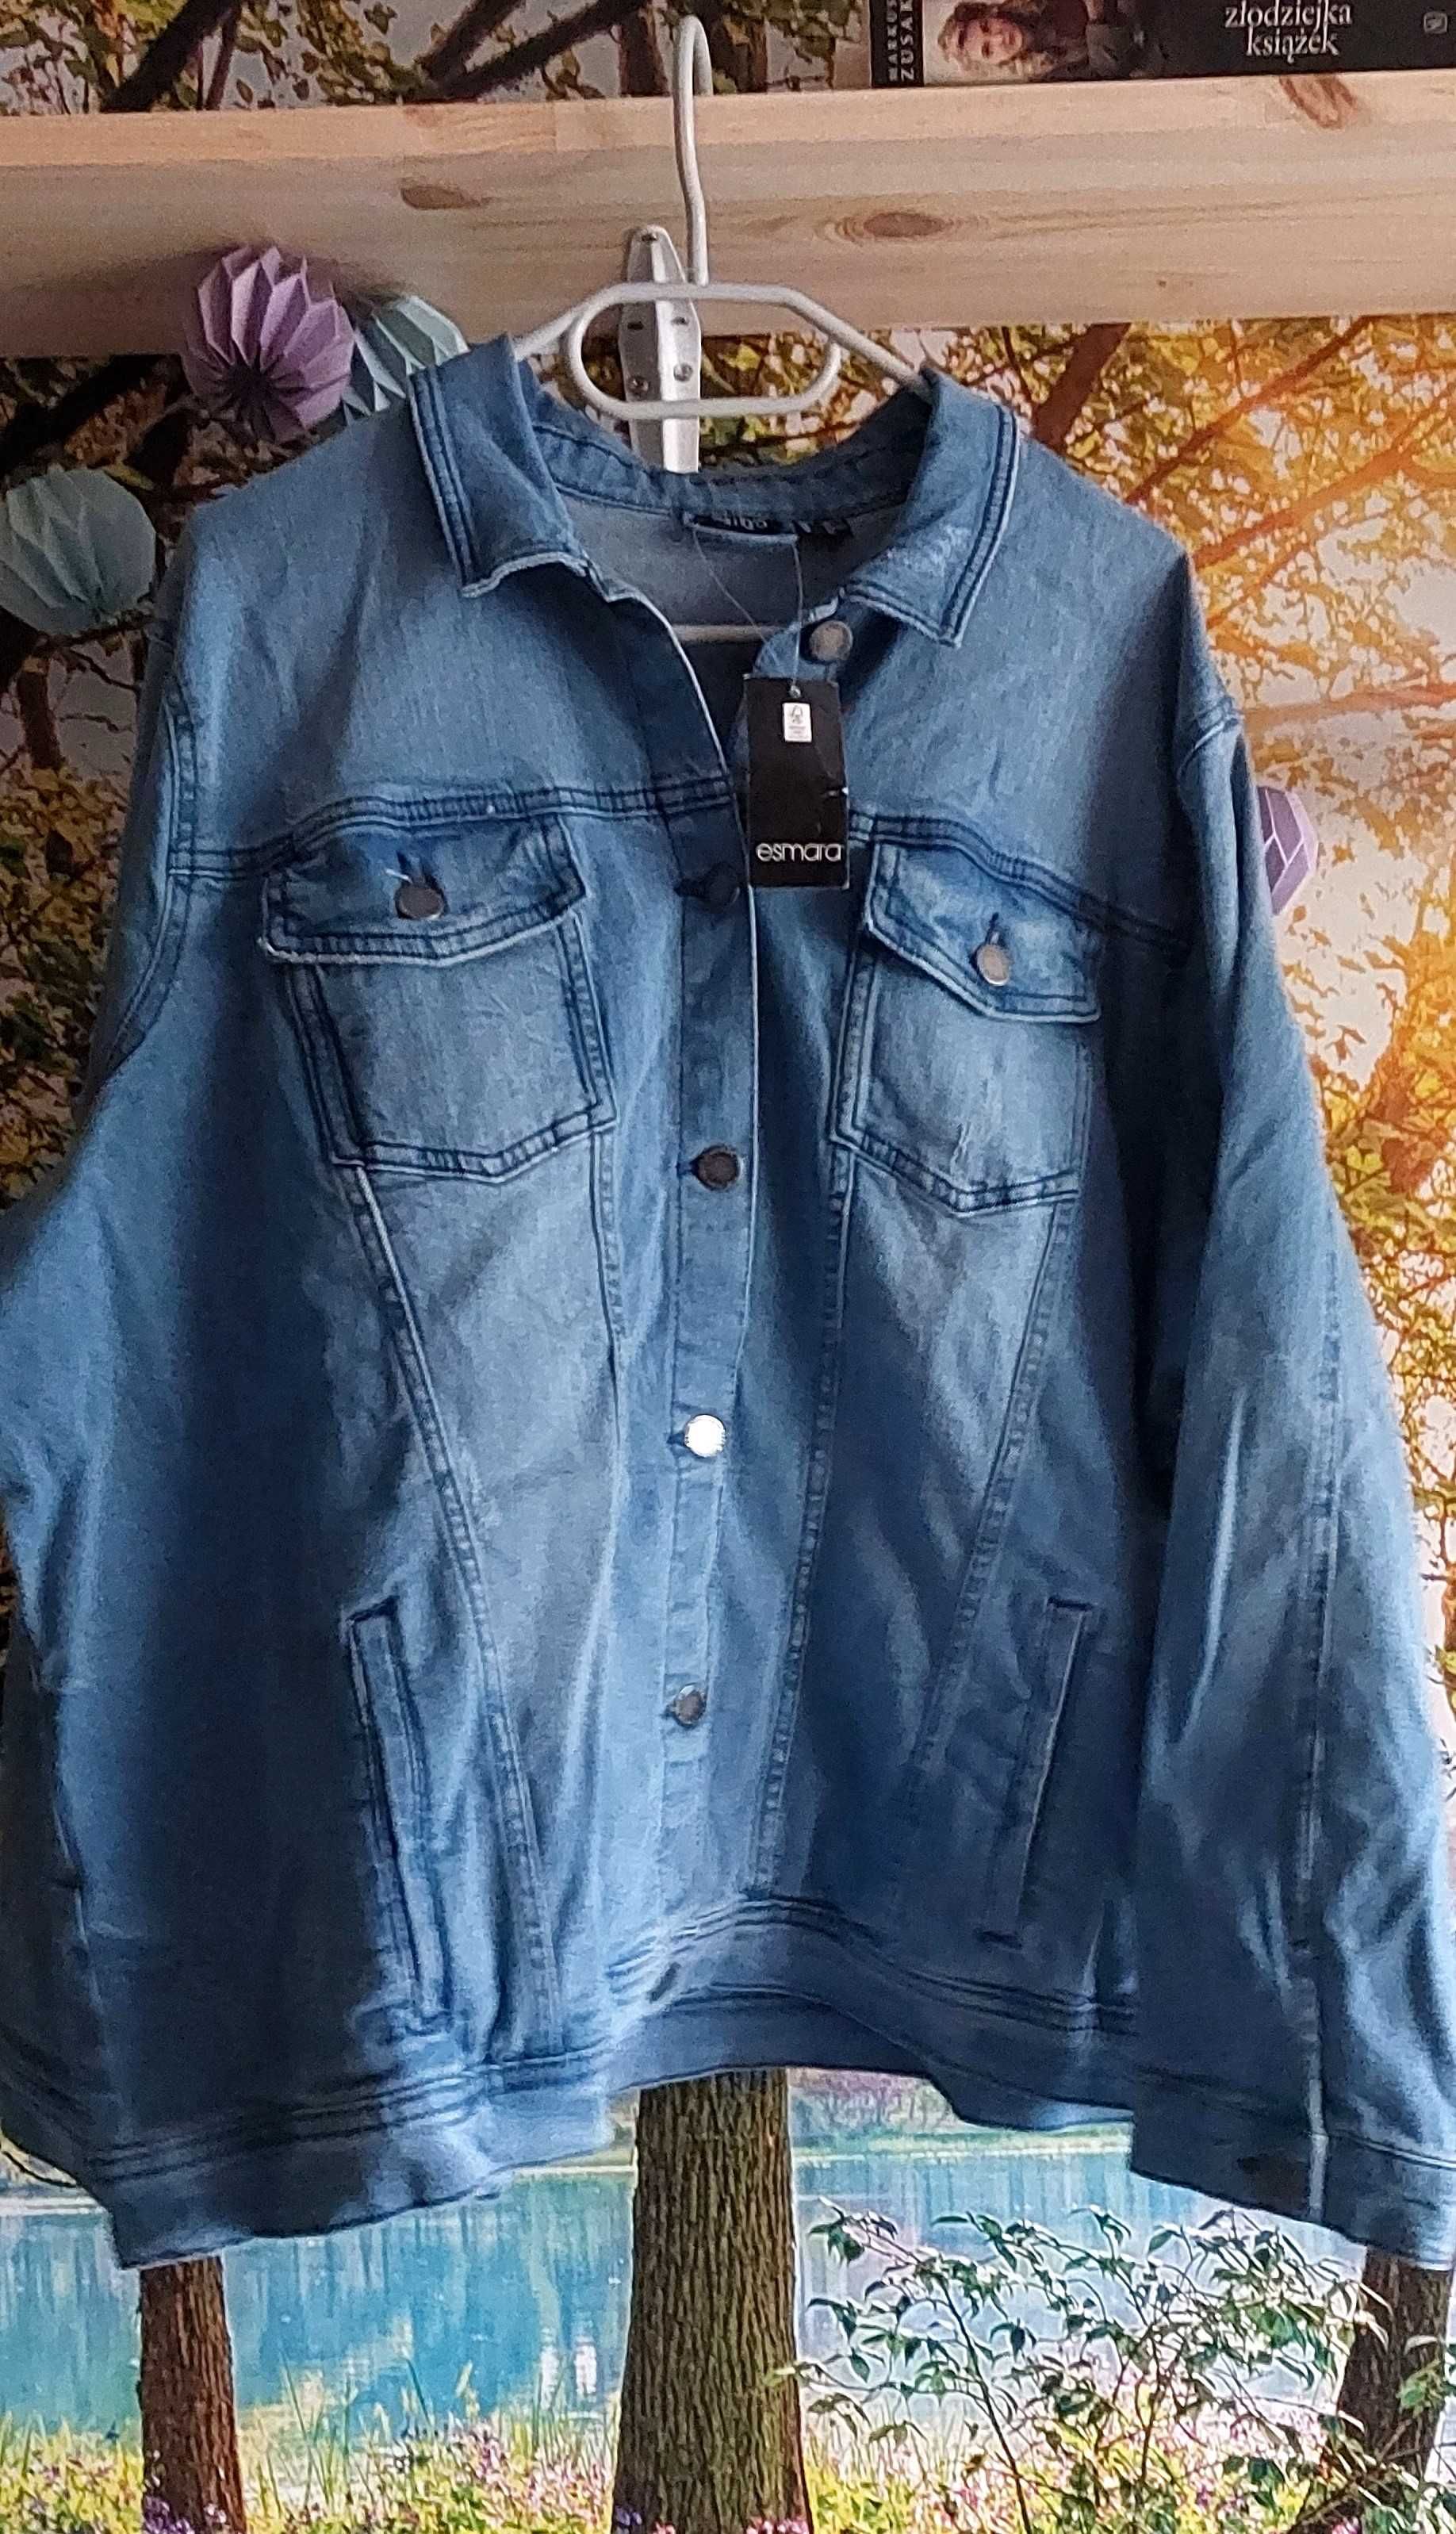 kurtka jeansowa z metką lata 90' vintage aesthetic